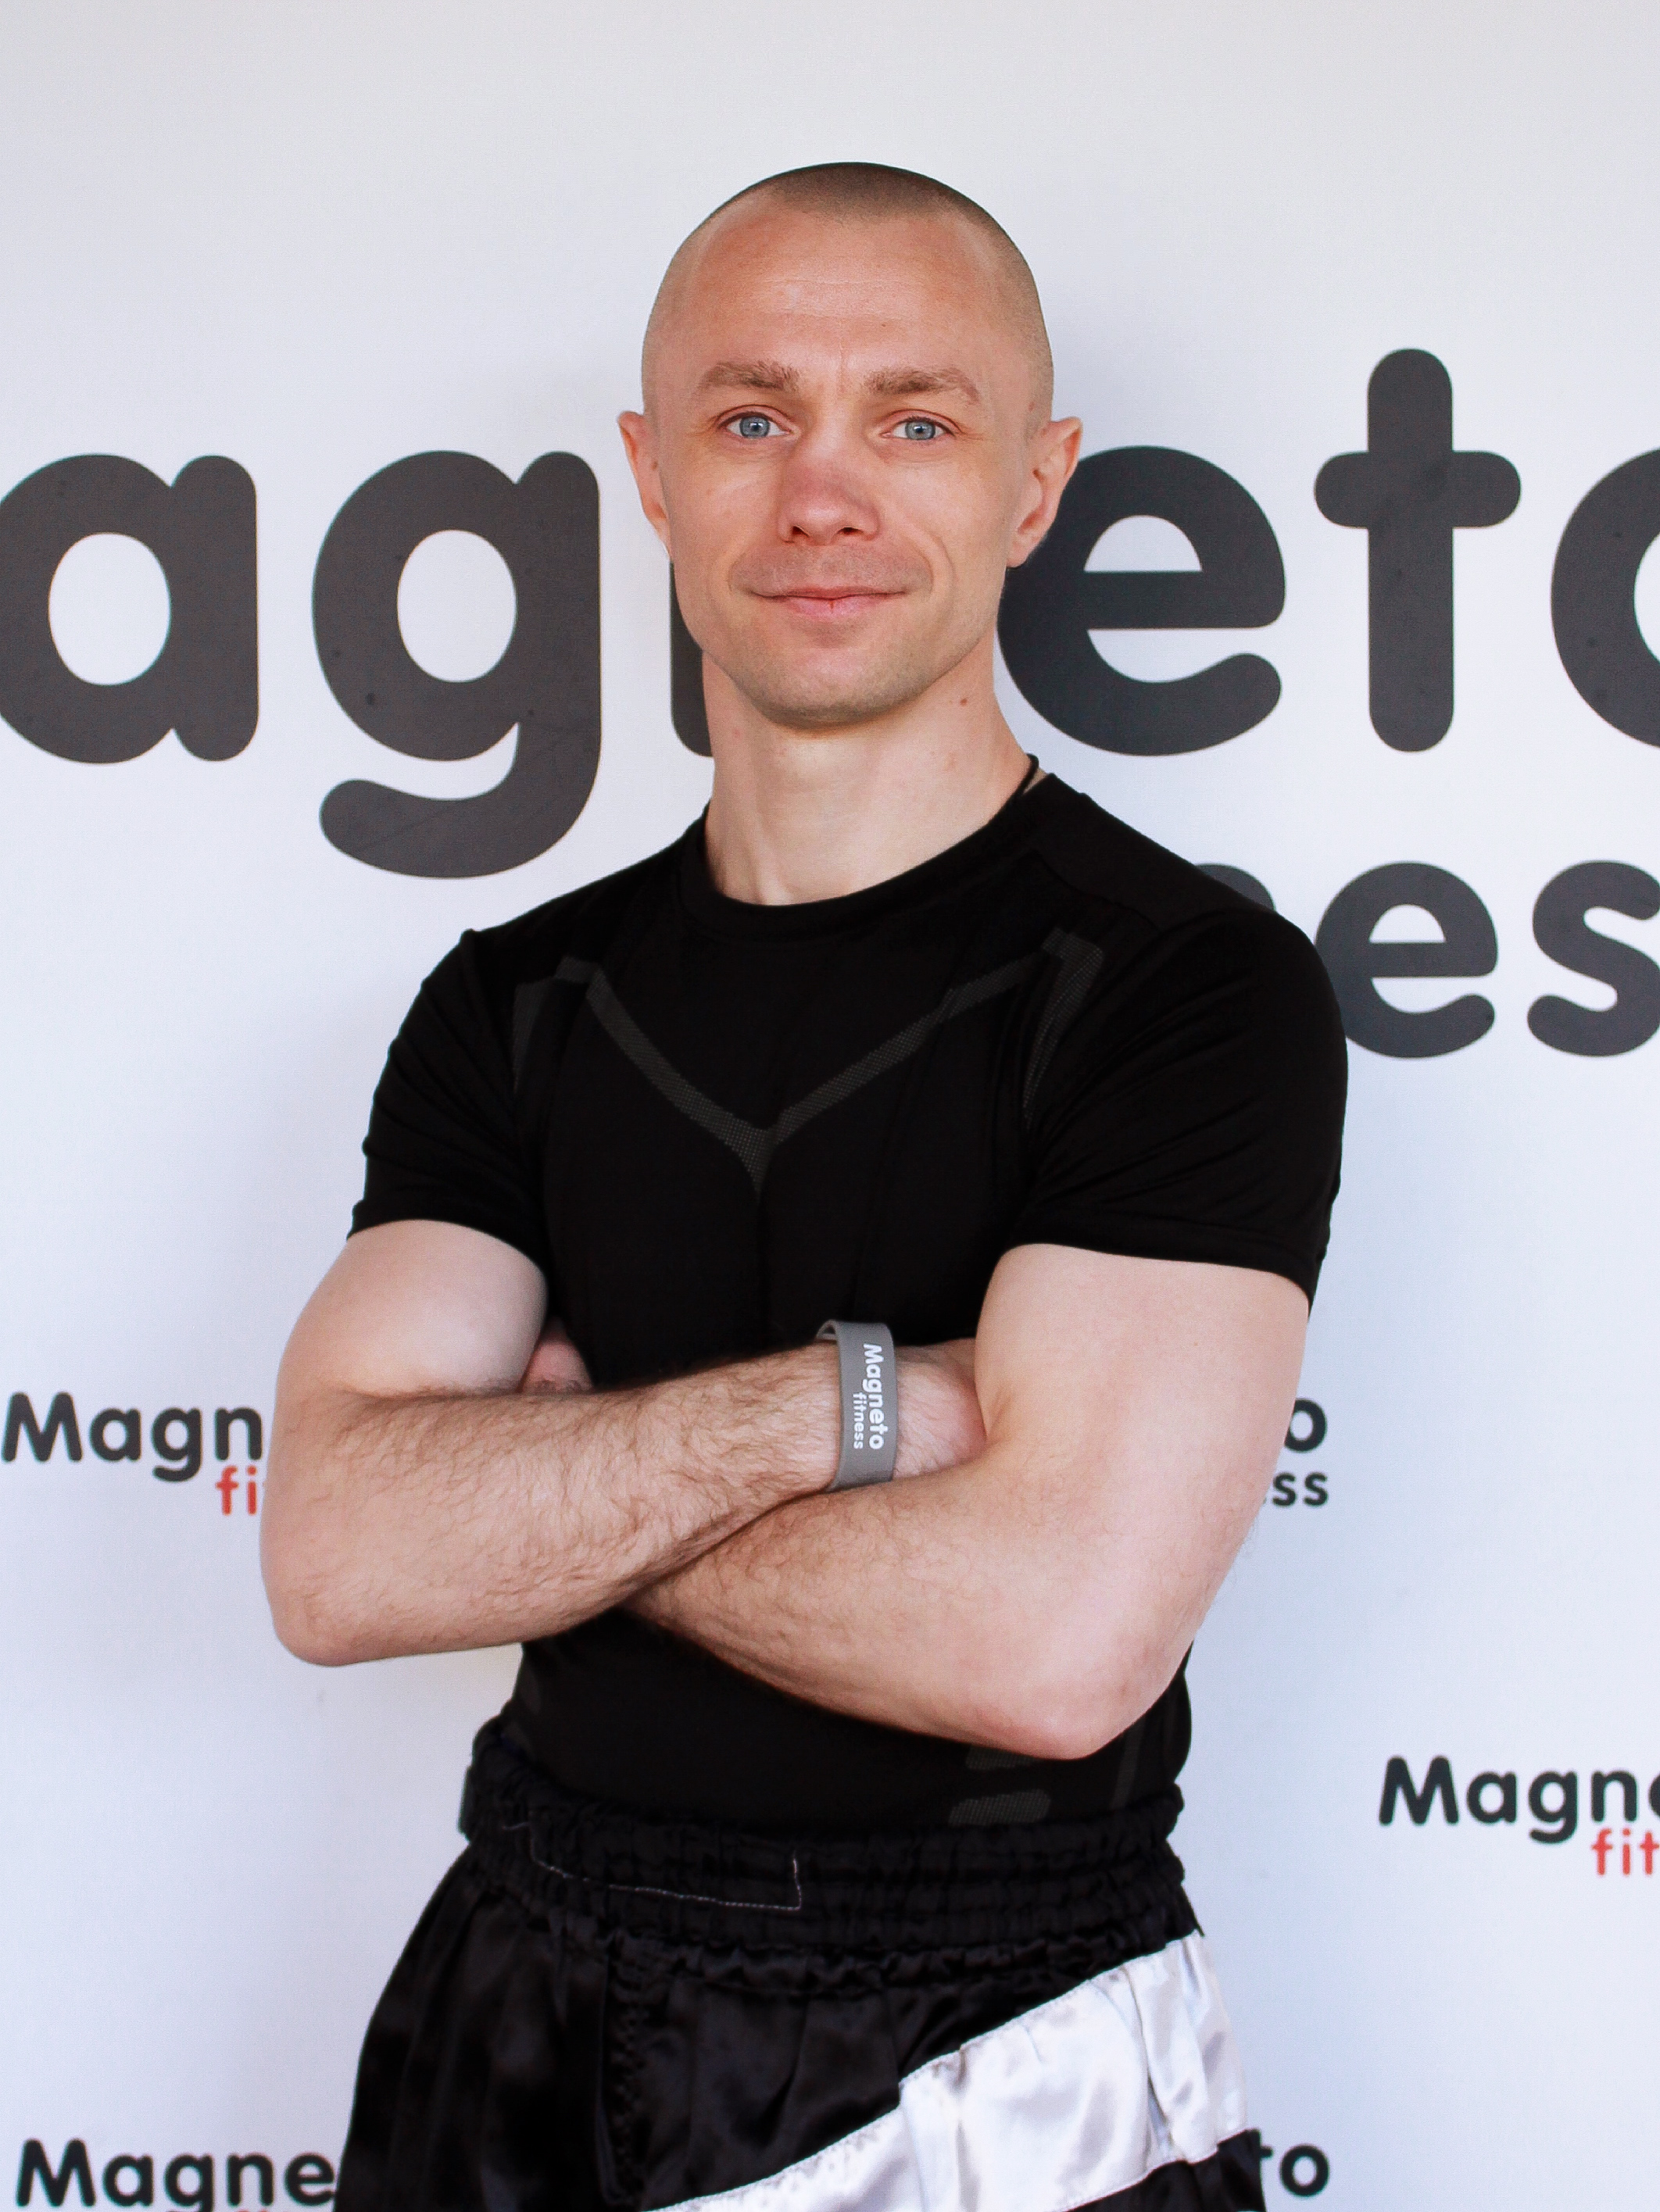 Андрей Петров - Magneto Fitness Марьино